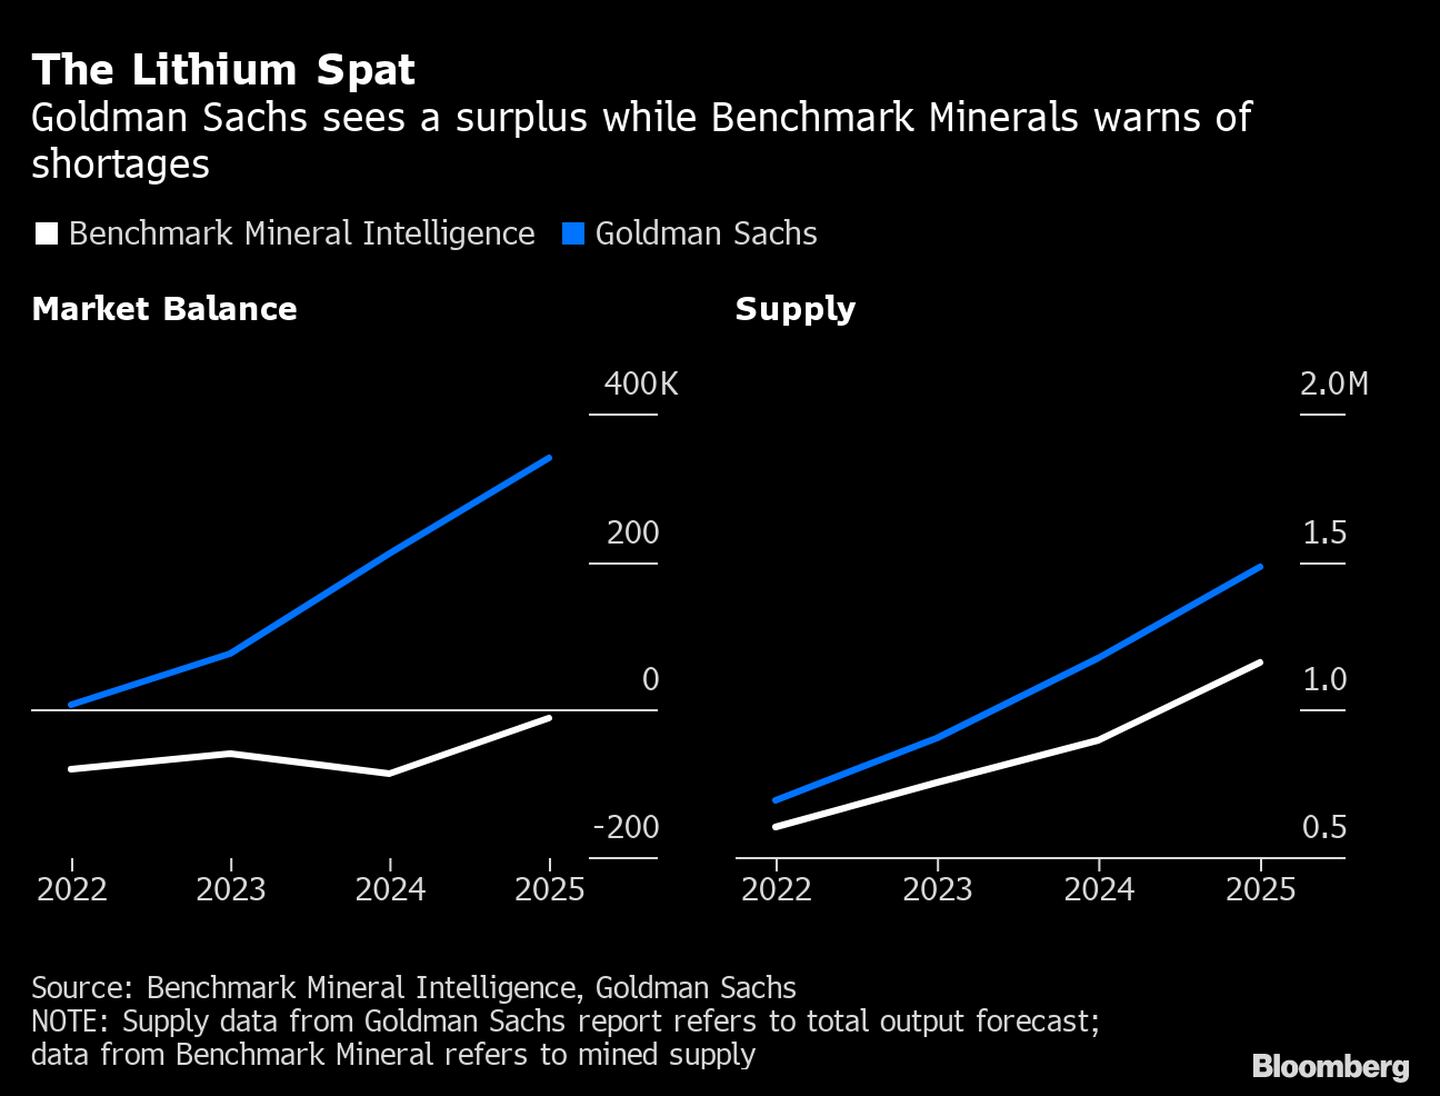 Goldman Sachs prevé un superávit, mientras que Benchmark Minerals advierte de escasez. dfd